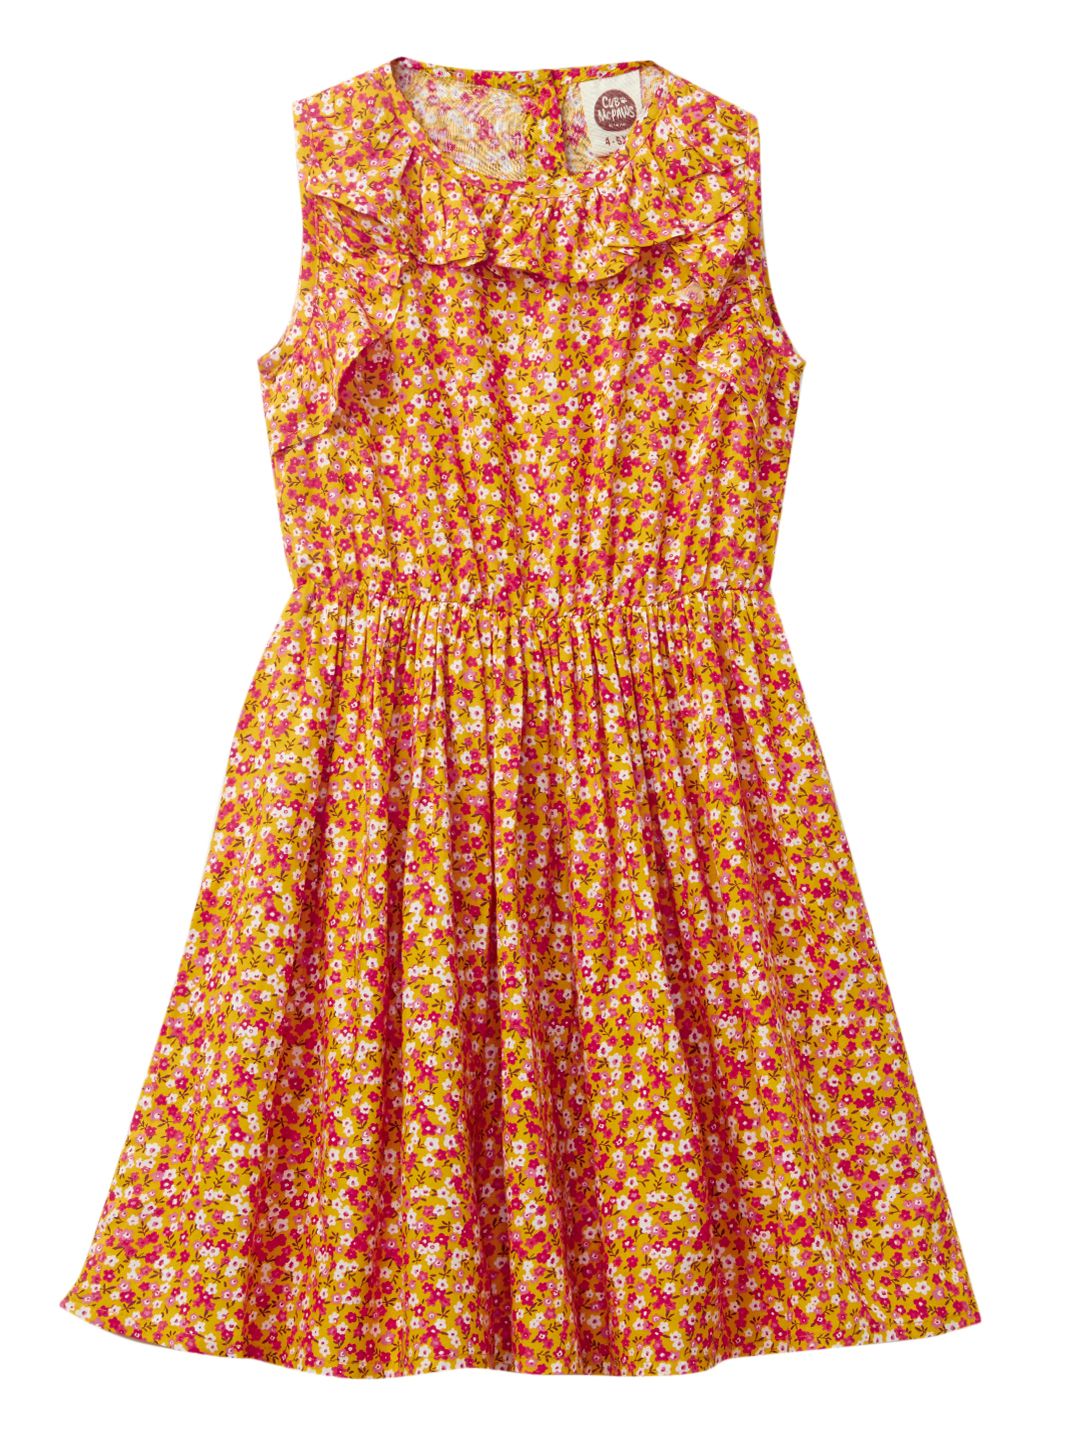 Girls Regular Rayon Fashion Dress, Canary Yellow